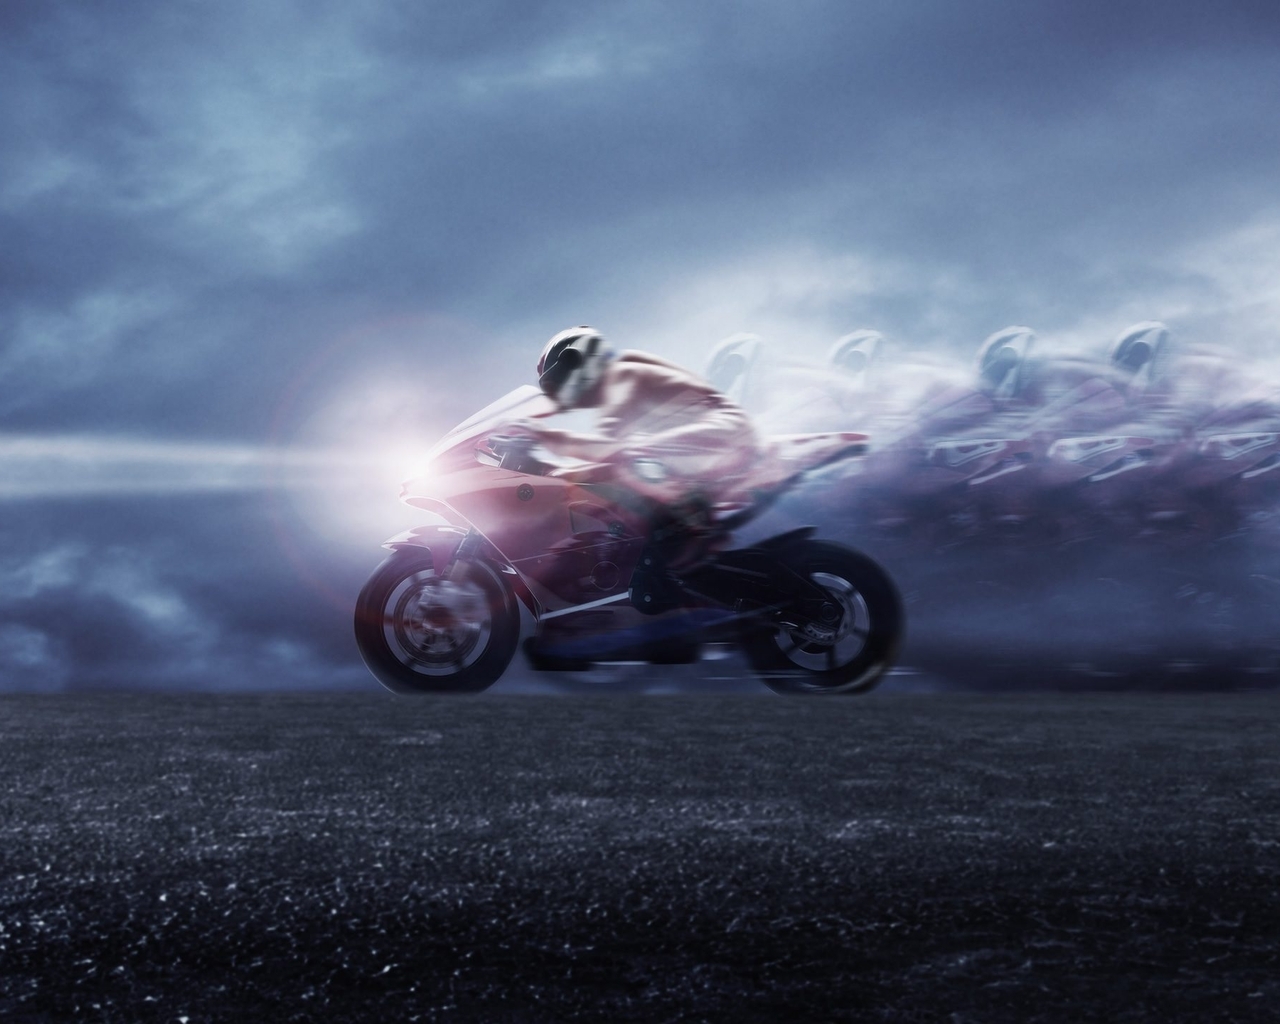 Image: Bike, racer, speed, light, sky, road